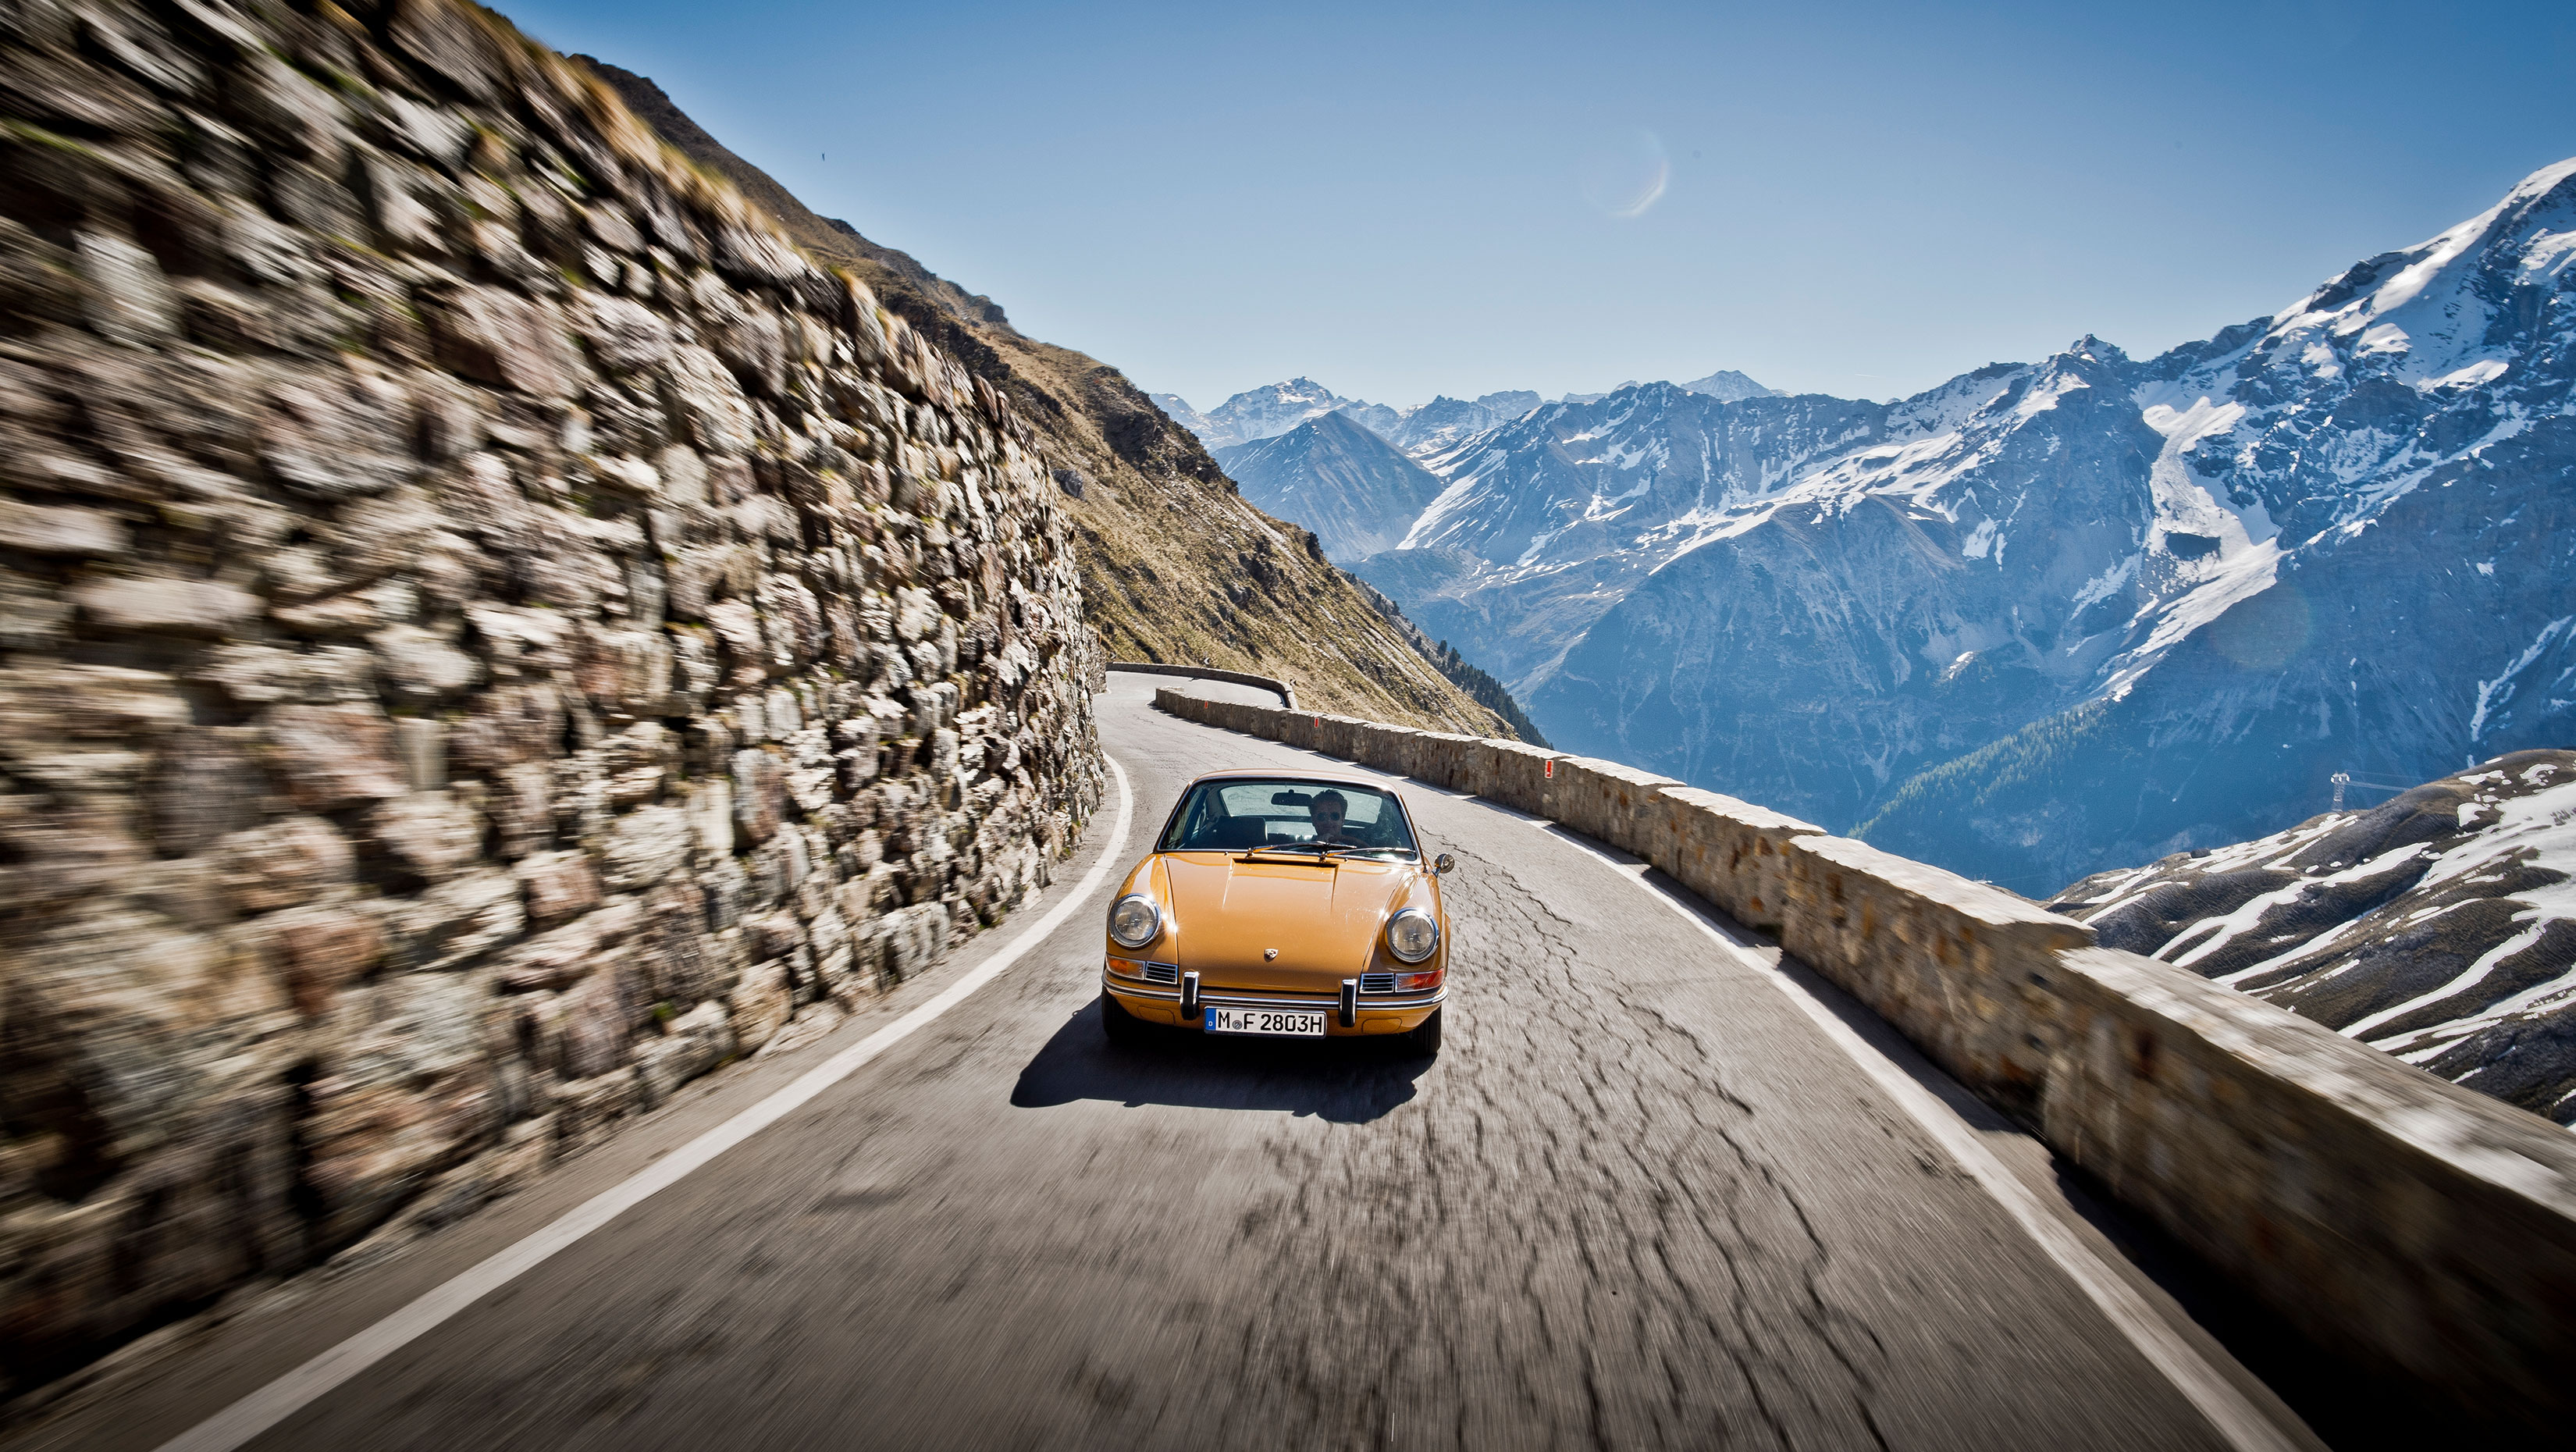 Orange Porsche 911 driving up a wall-lined mountain pass